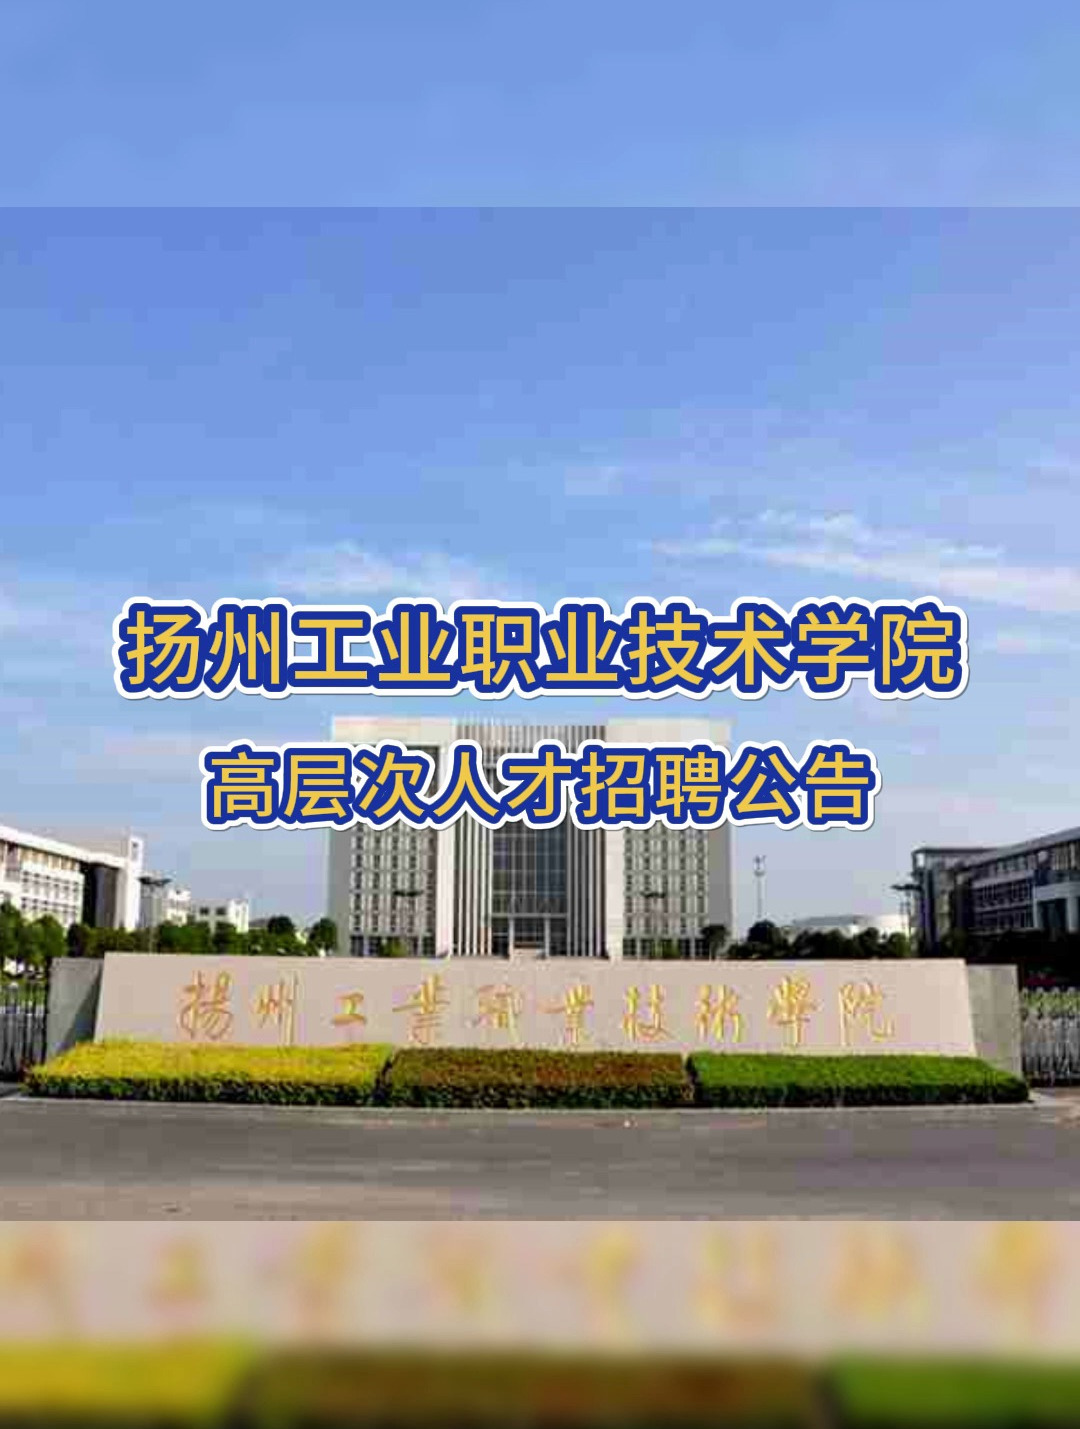 宿州职业技术学院全景图片